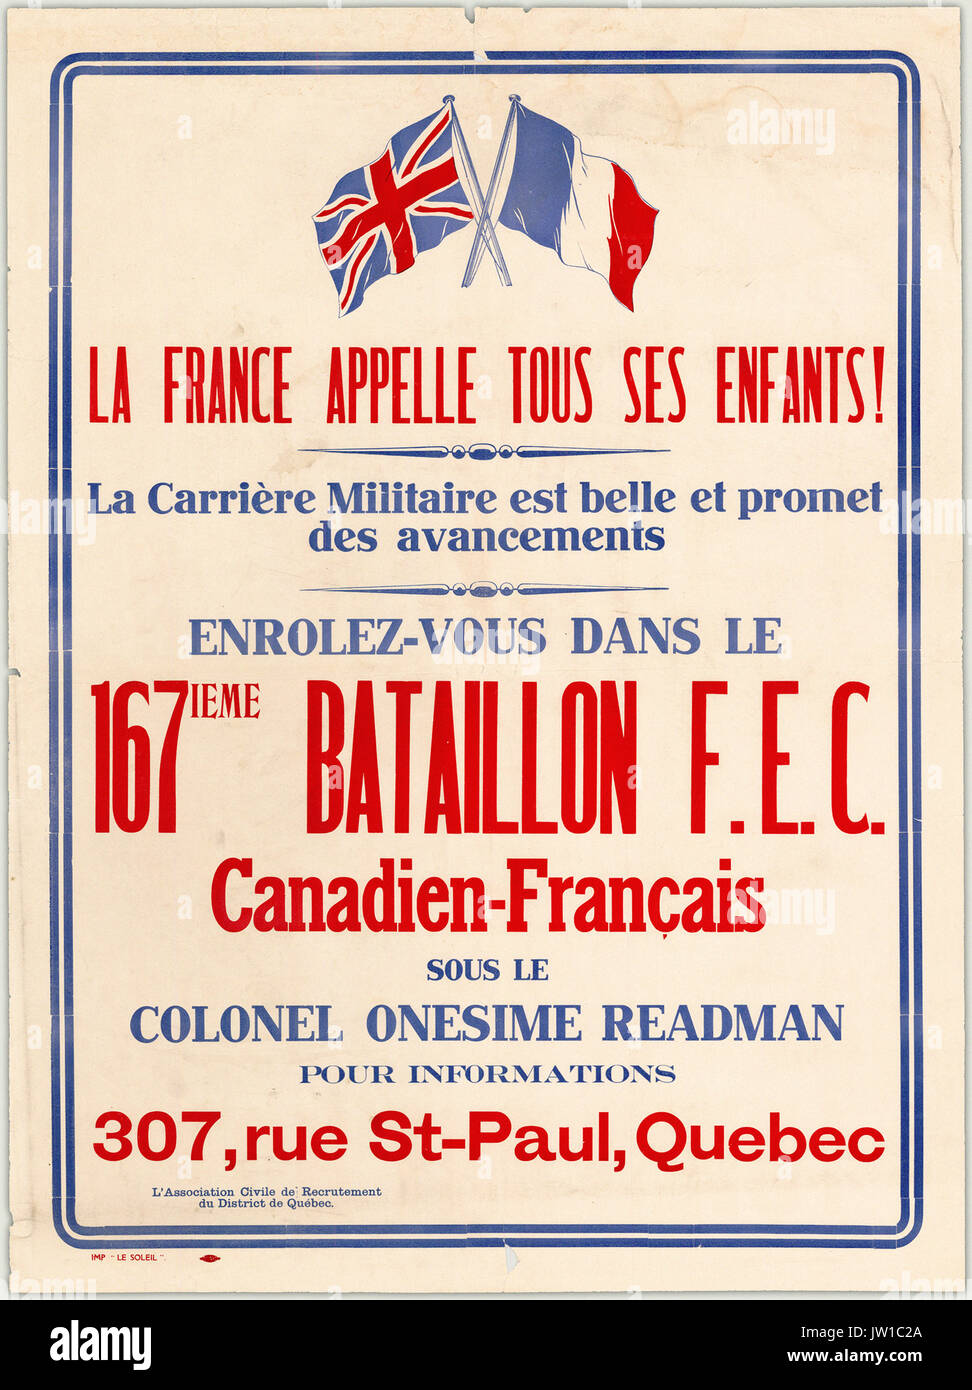 La France appell tous ses enfants! La carri u00e8re Militaire est belle et promet des avancements. Enrolez-vous dans le 167ieme Bataillion F.E.C. Canadien-Francais... by UBC Library Digiti 0002 Stock Photo